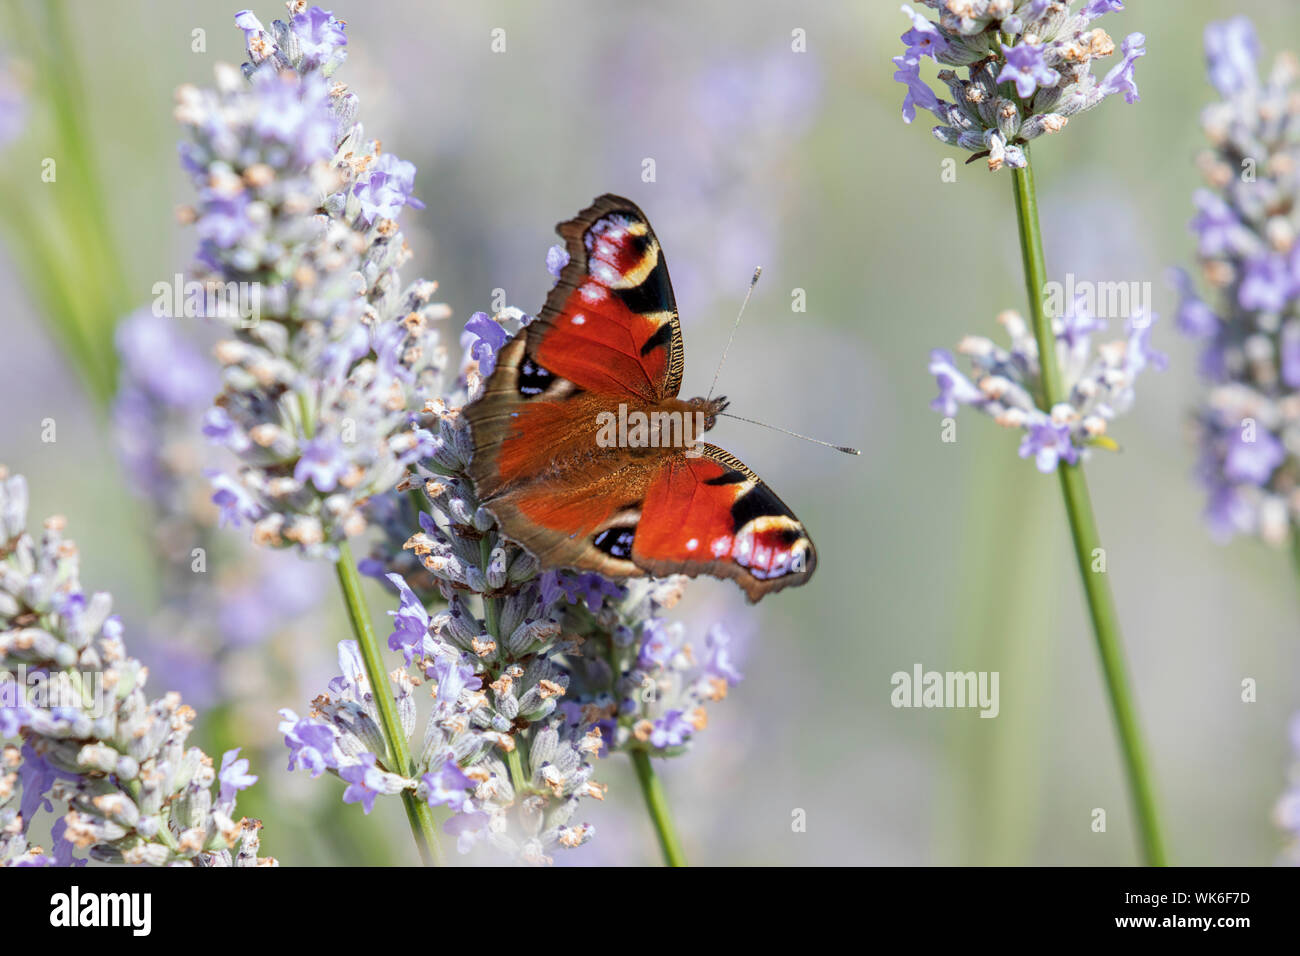 Una hermosa mariposa de pavo real Aglais io descansando en la lavanda inglesa en un jardín de la casa Foto de stock